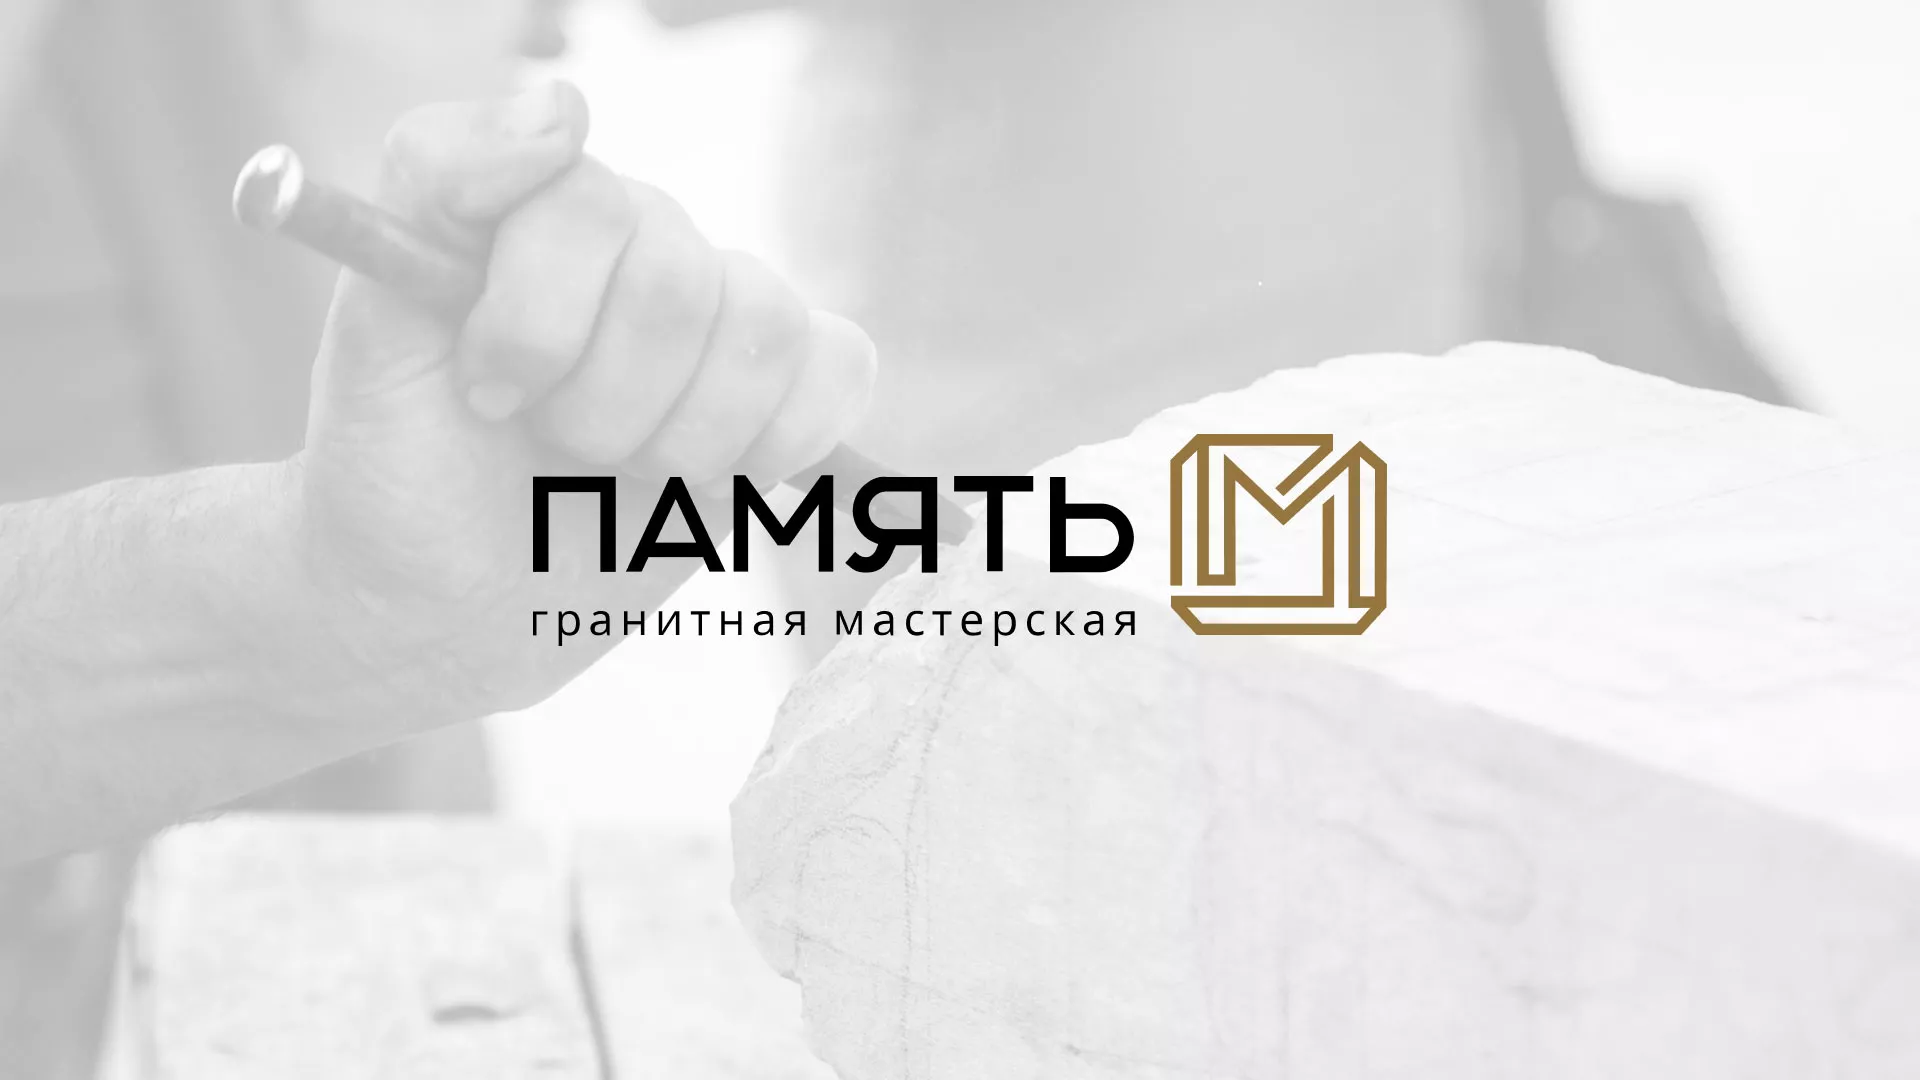 Разработка логотипа и сайта компании «Память-М» в Нижнем Новгороде